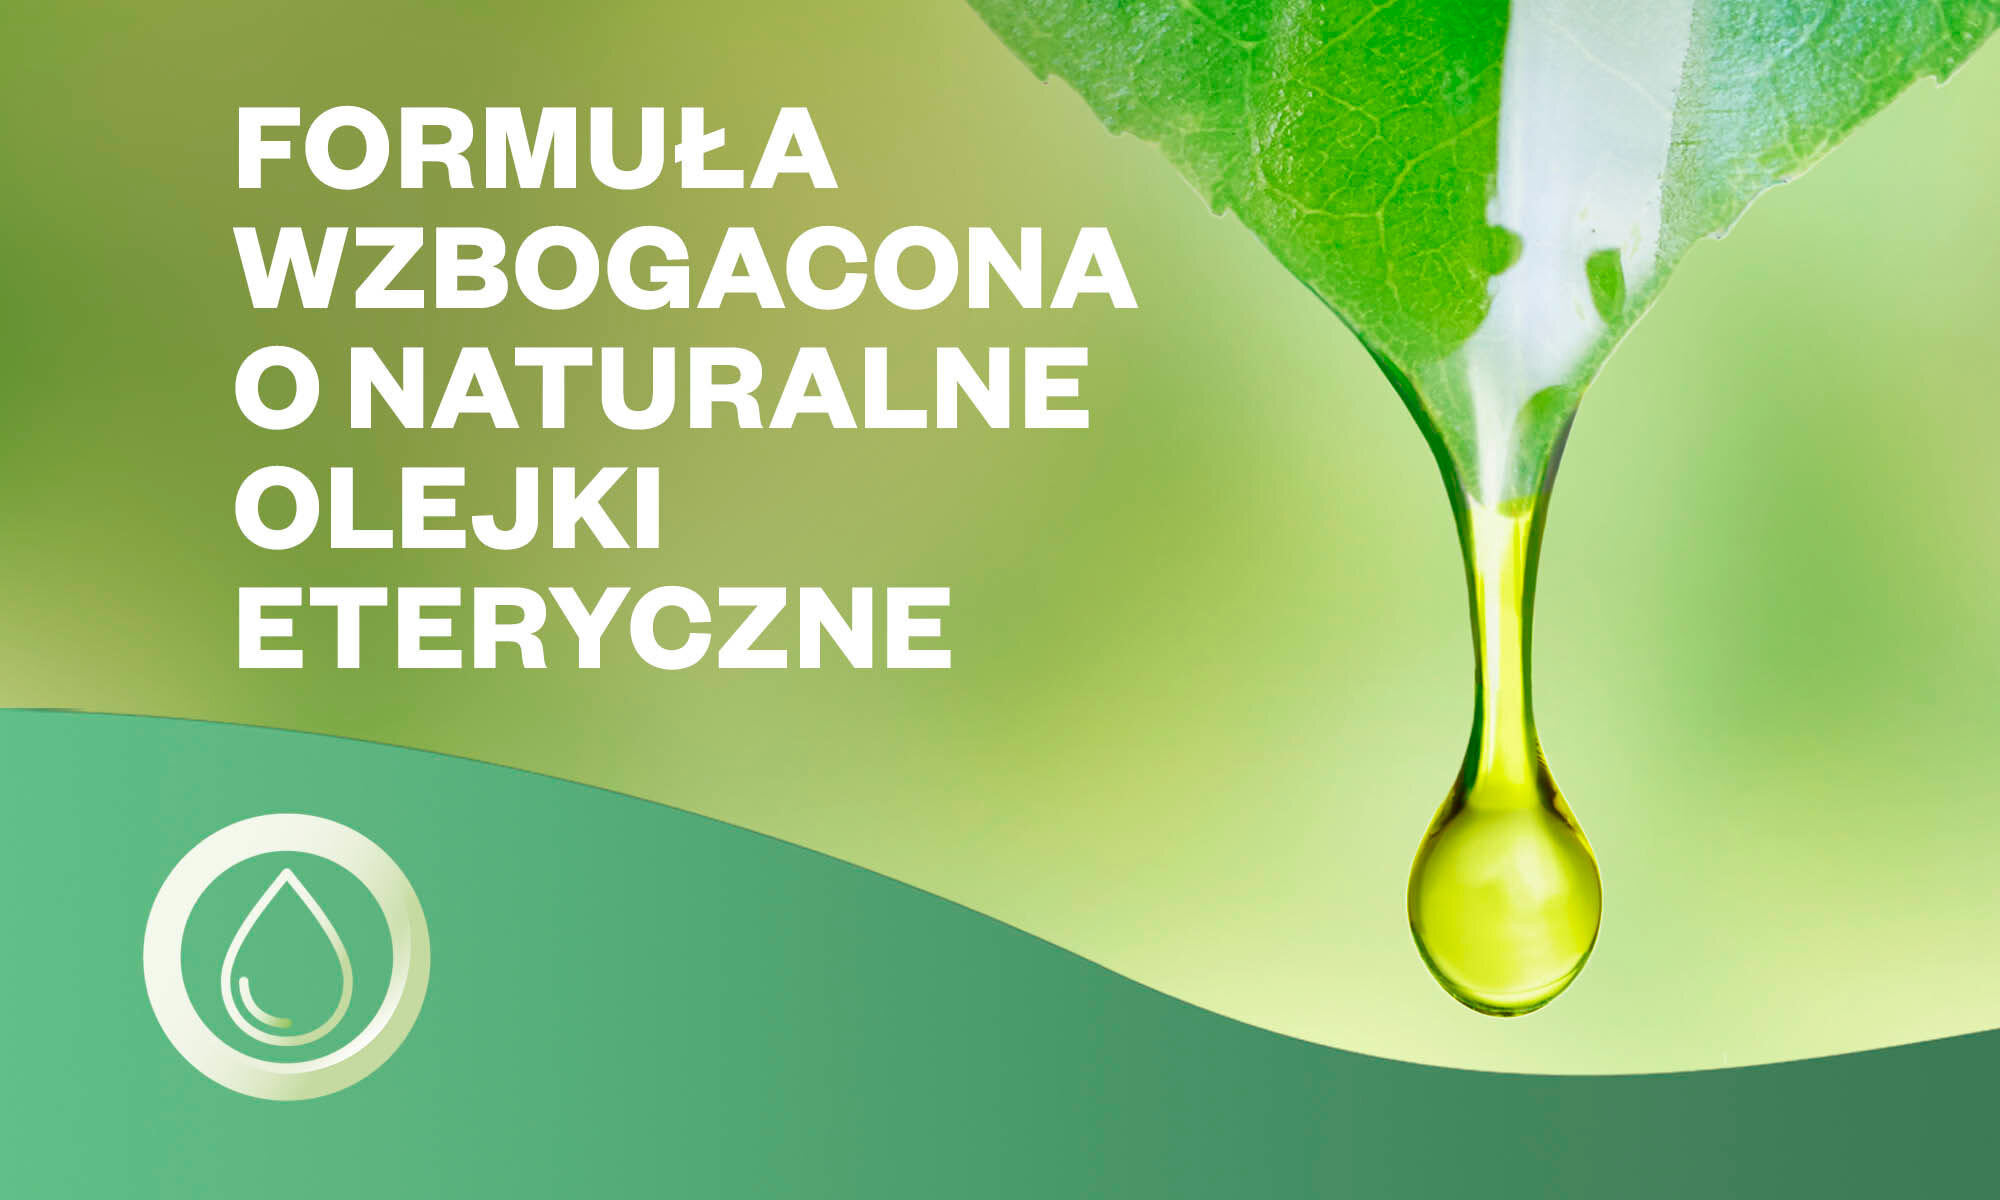 Patyczki zapachowe AIR WICK Drzewo Sandałowe i Zmysłowa Wanilia 30 ml Essential Oils naturalne olejki